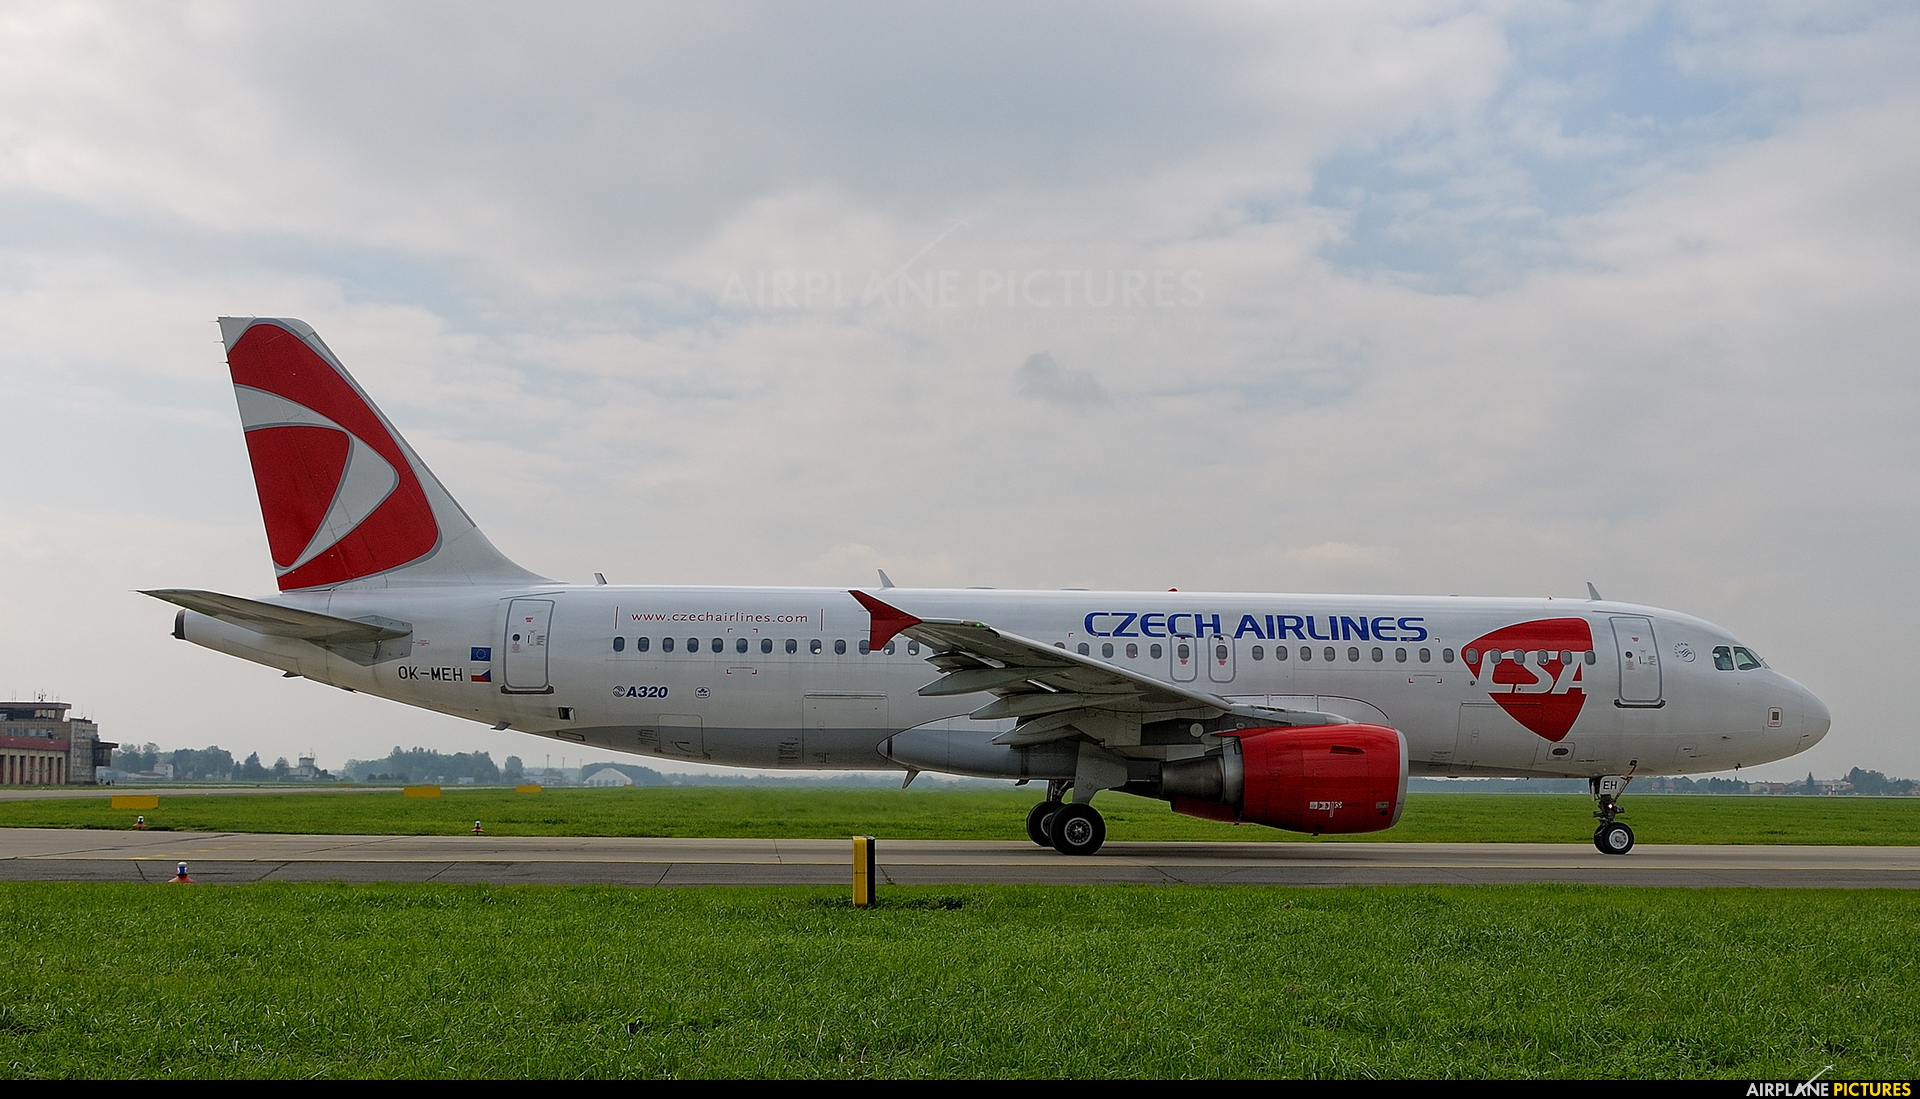 CSA - Czech Airlines OK-MEH aircraft at Ostrava Mošnov